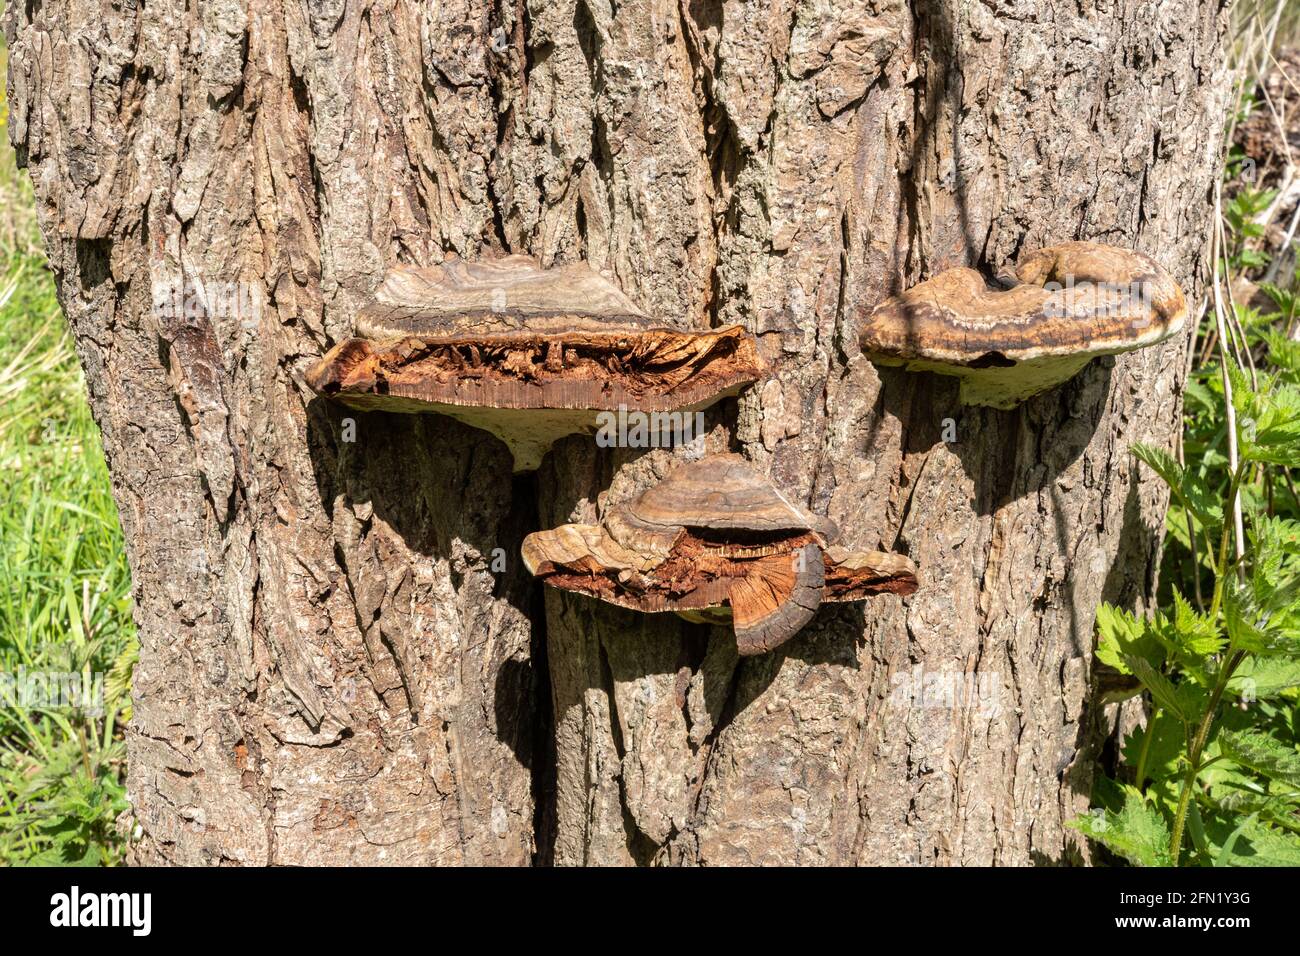 Willow bracket fungi (Phellinus igniarius) on willow tree trunk, UK Stock Photo